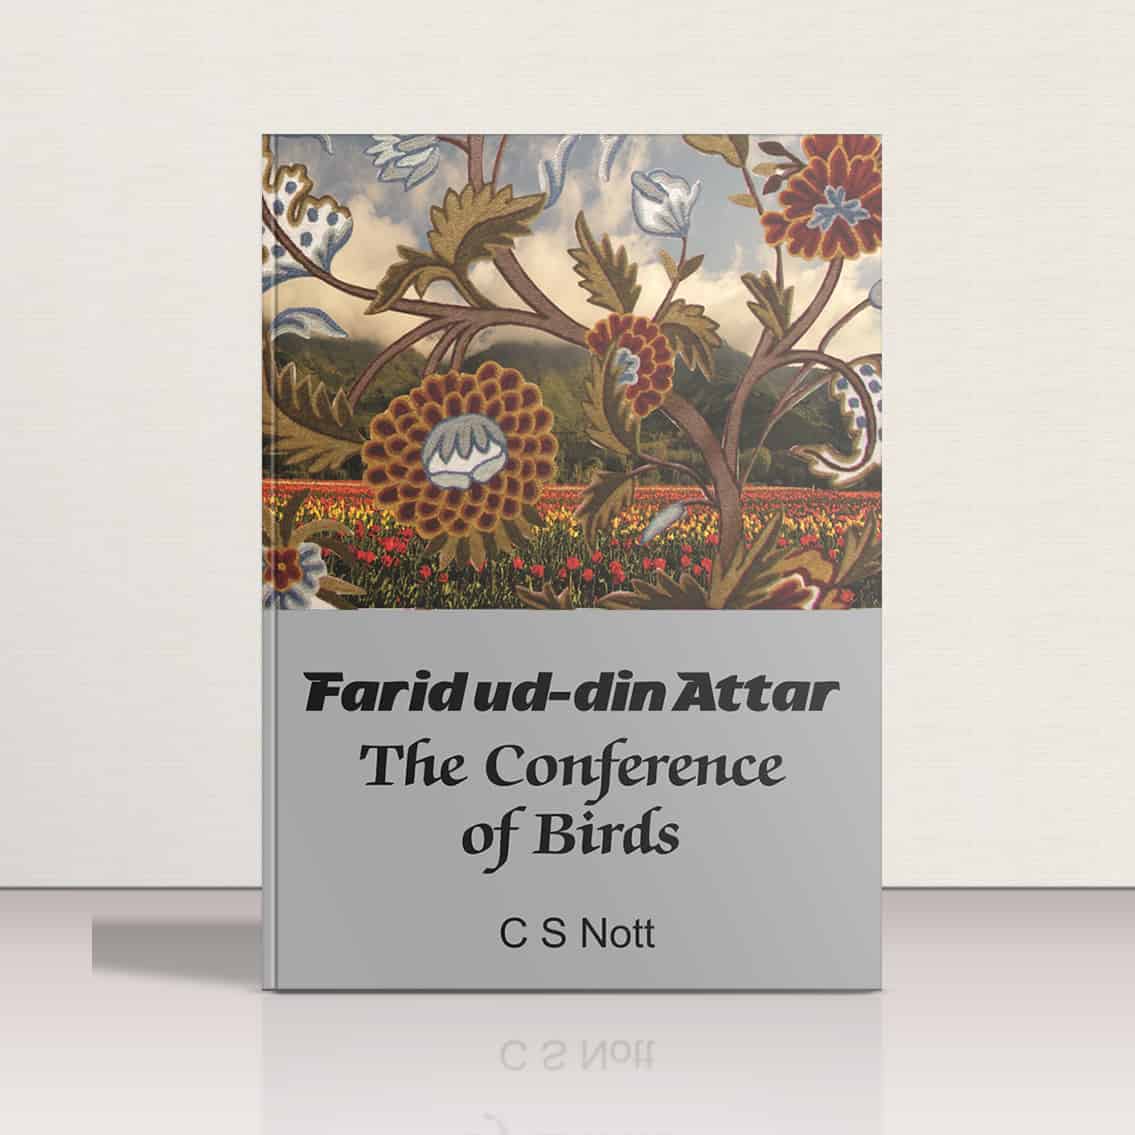 The Conference of Birds - Faridud-din Attar